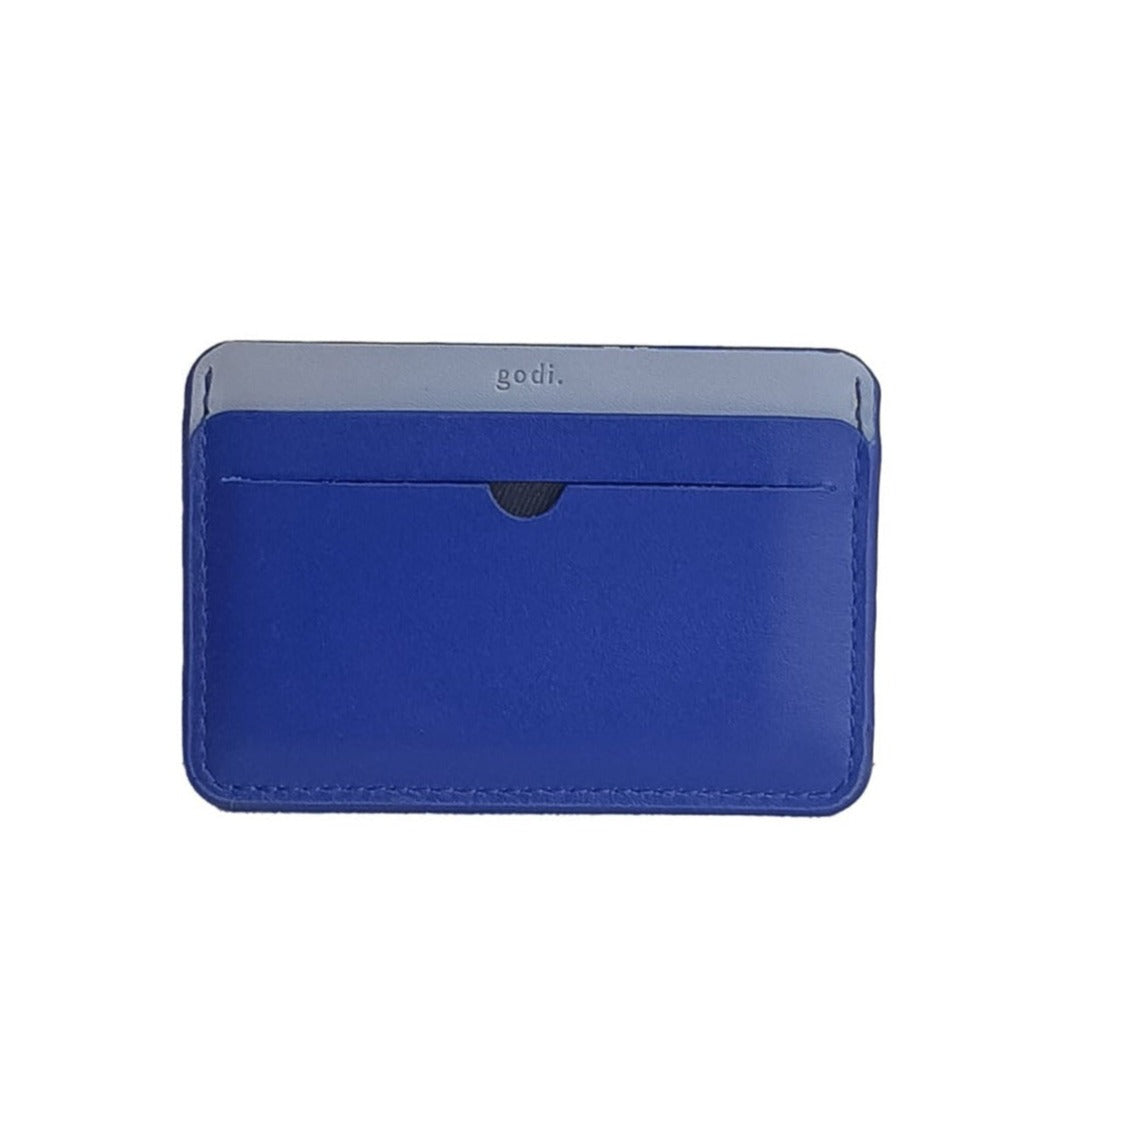 Slim Cardholder in Cobalt Blue and Ice Blue